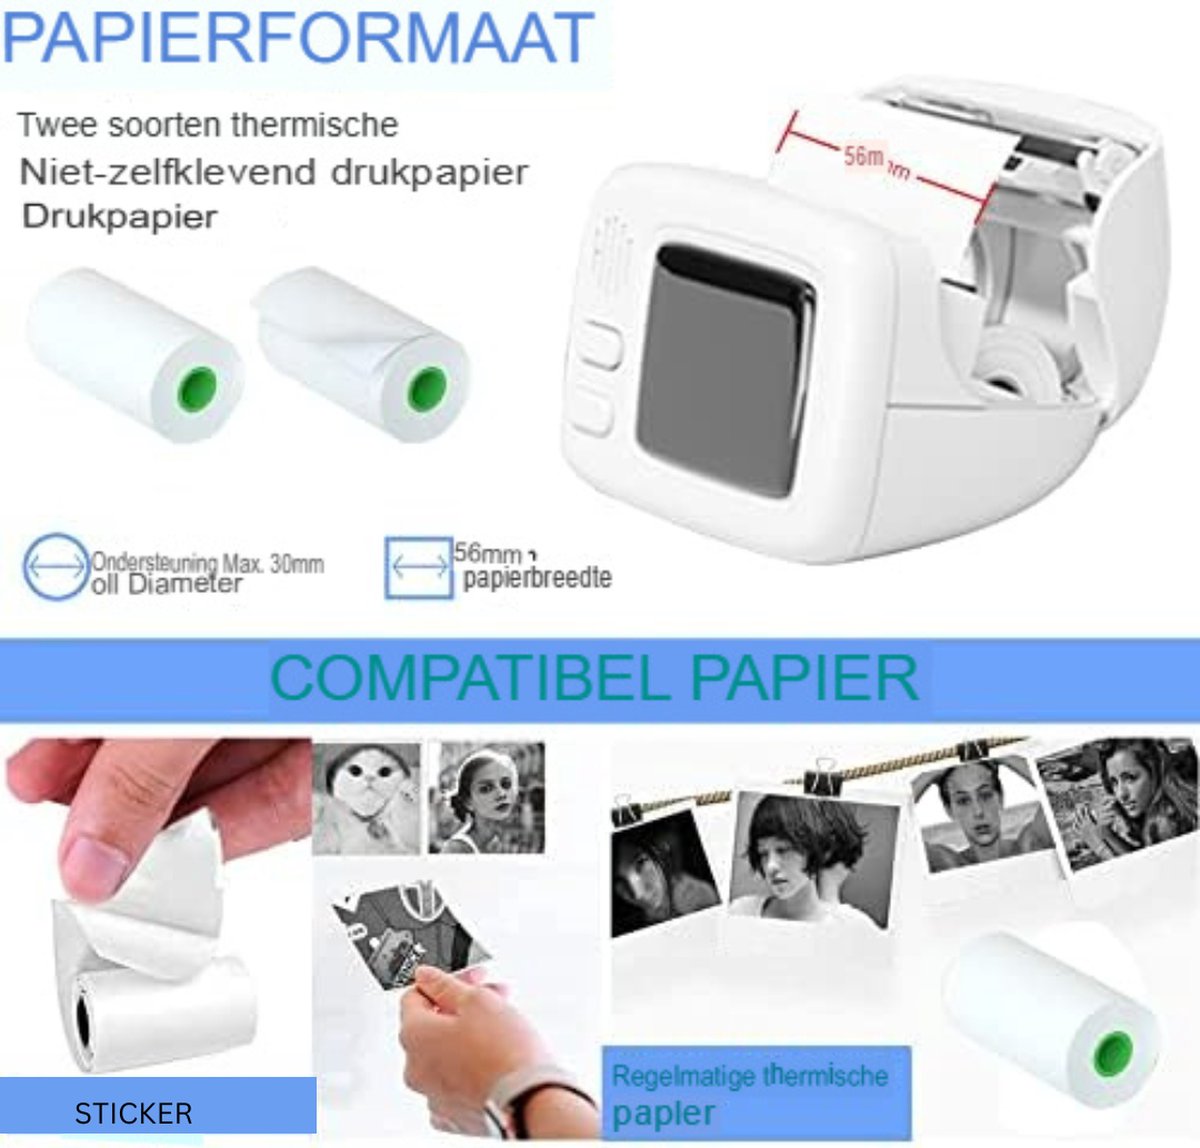 Gratyfied- Fotoprinter Voor Smartphone- Photo printer for smartphone- Pocket Printer- Zakprinter- Mini Printer Voor Mobiel- Mini Printer For Mobile